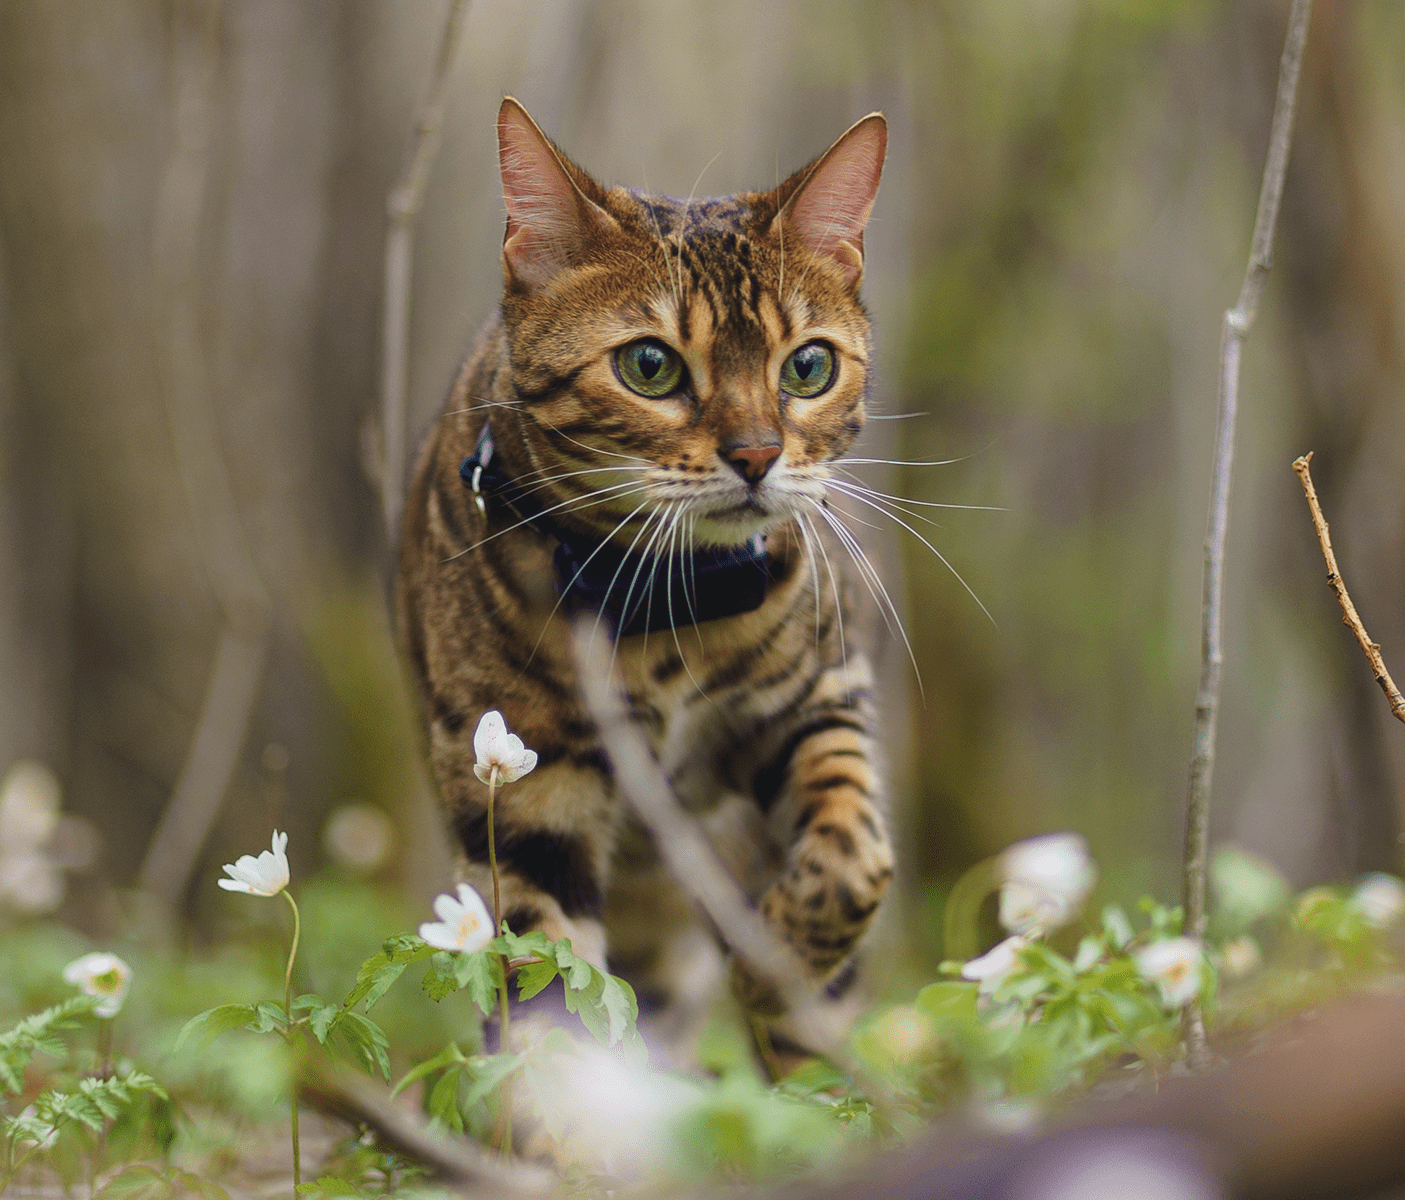 Cat standing in the garden